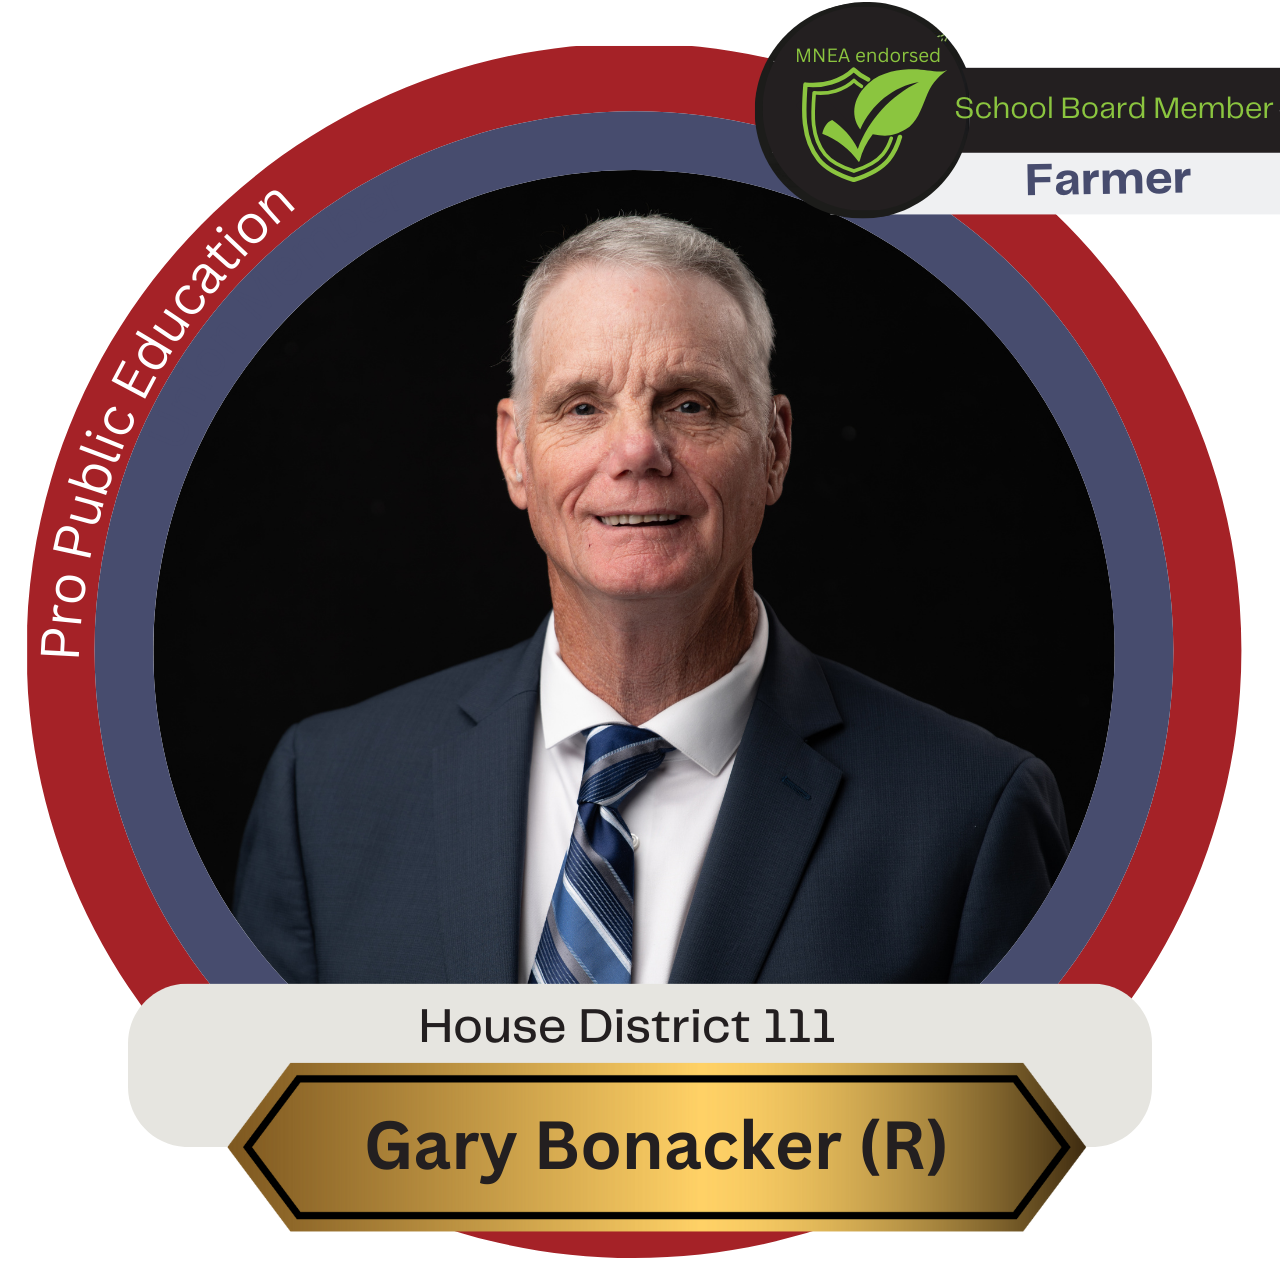 Gary Bonacker